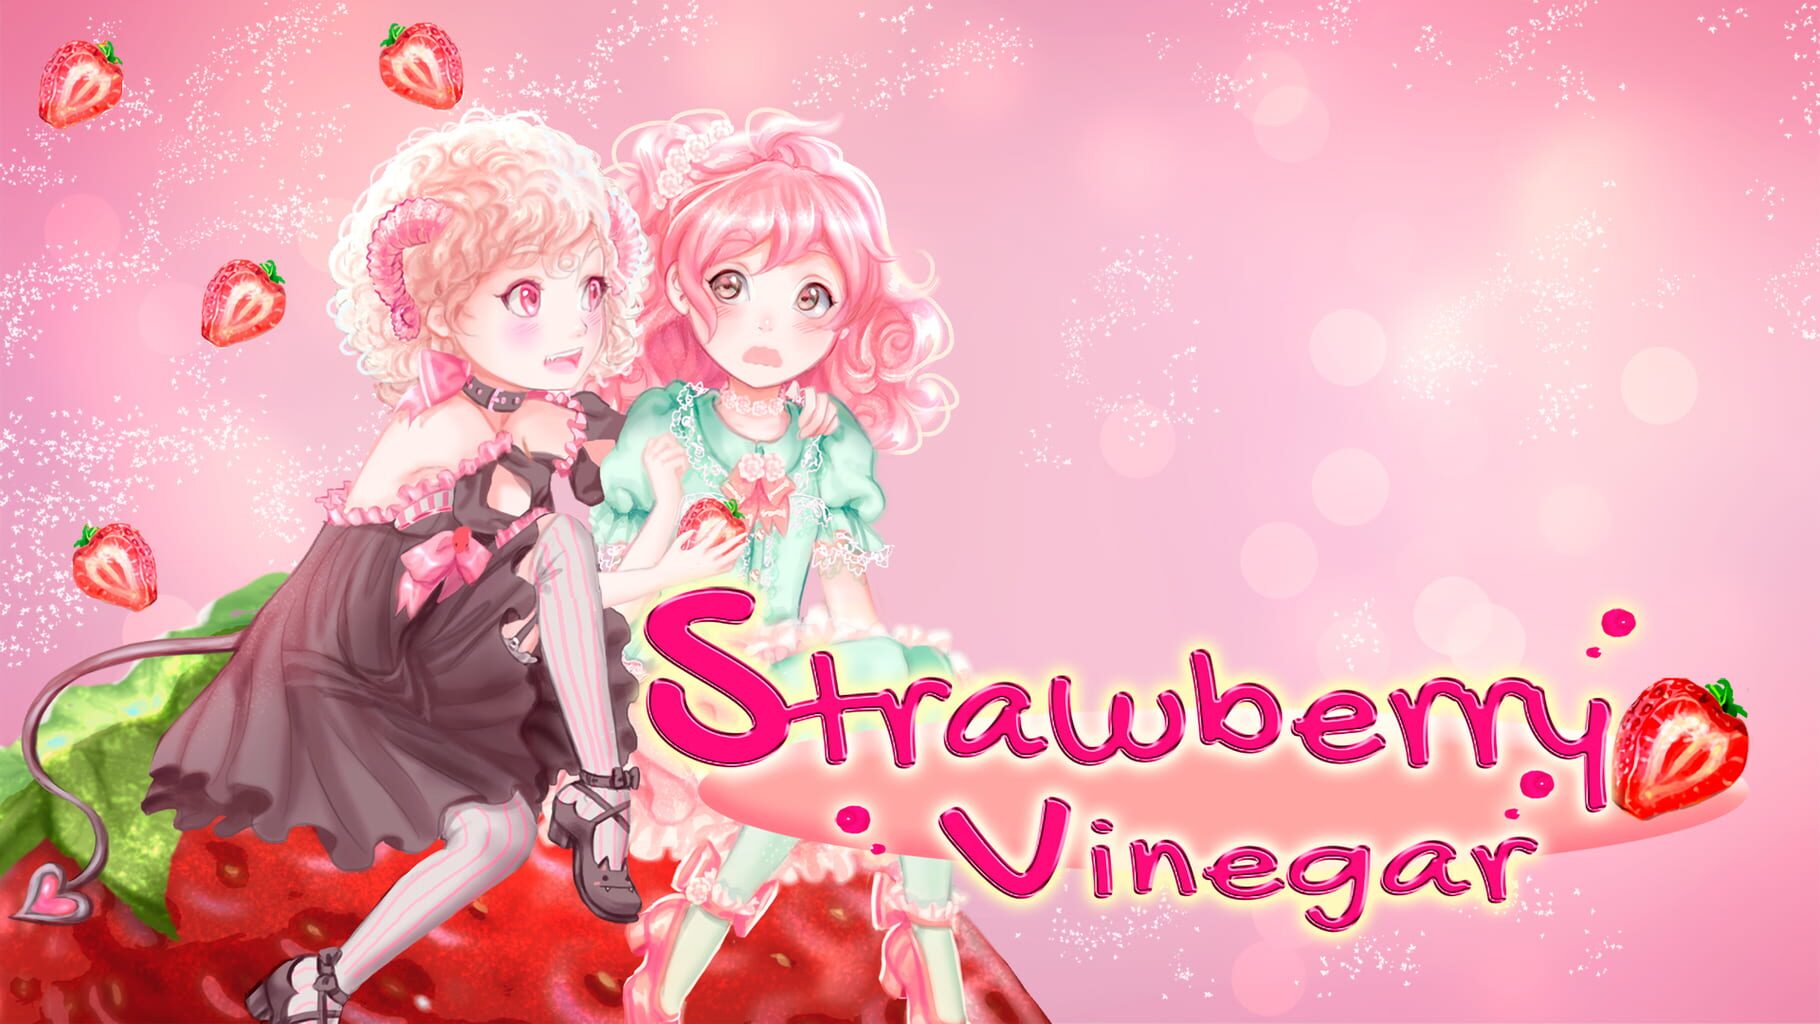 Strawberry Vinegar artwork